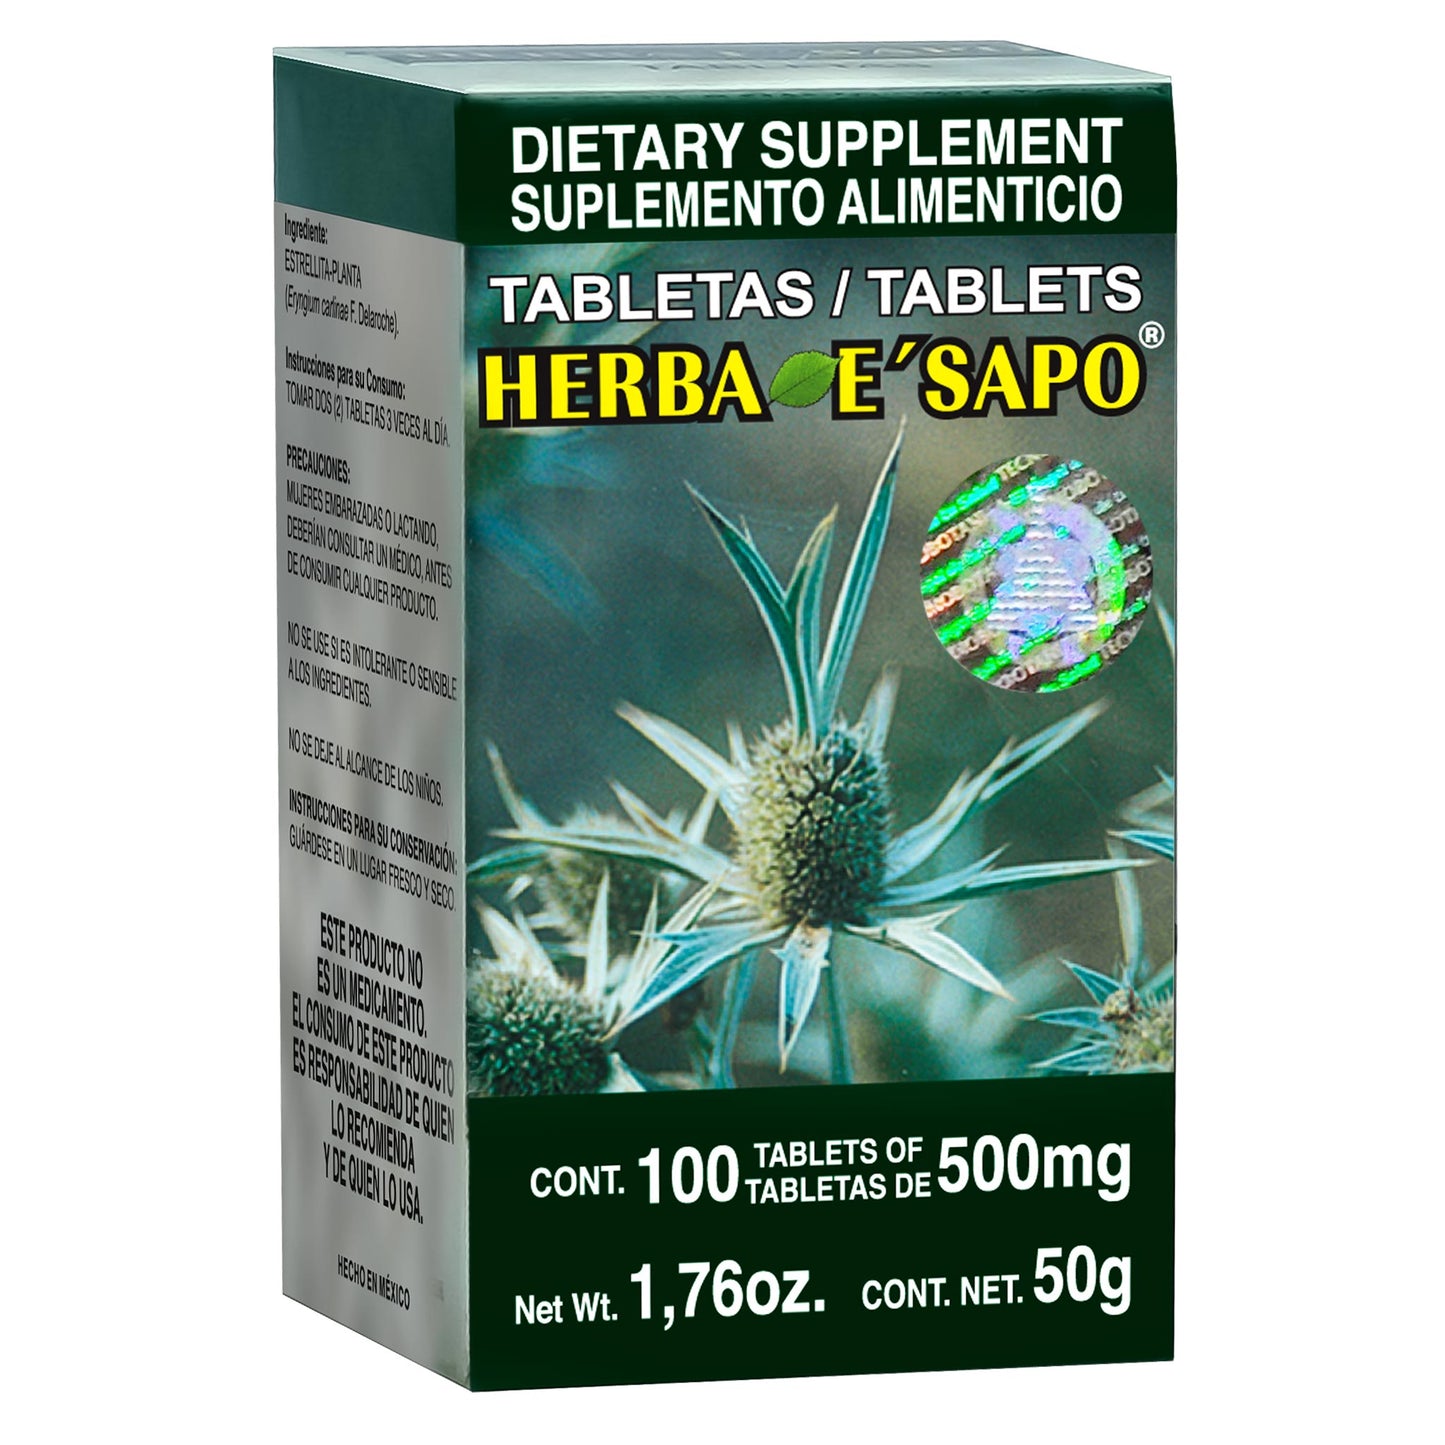 HERBA E' SAPO ® 100 tabletas